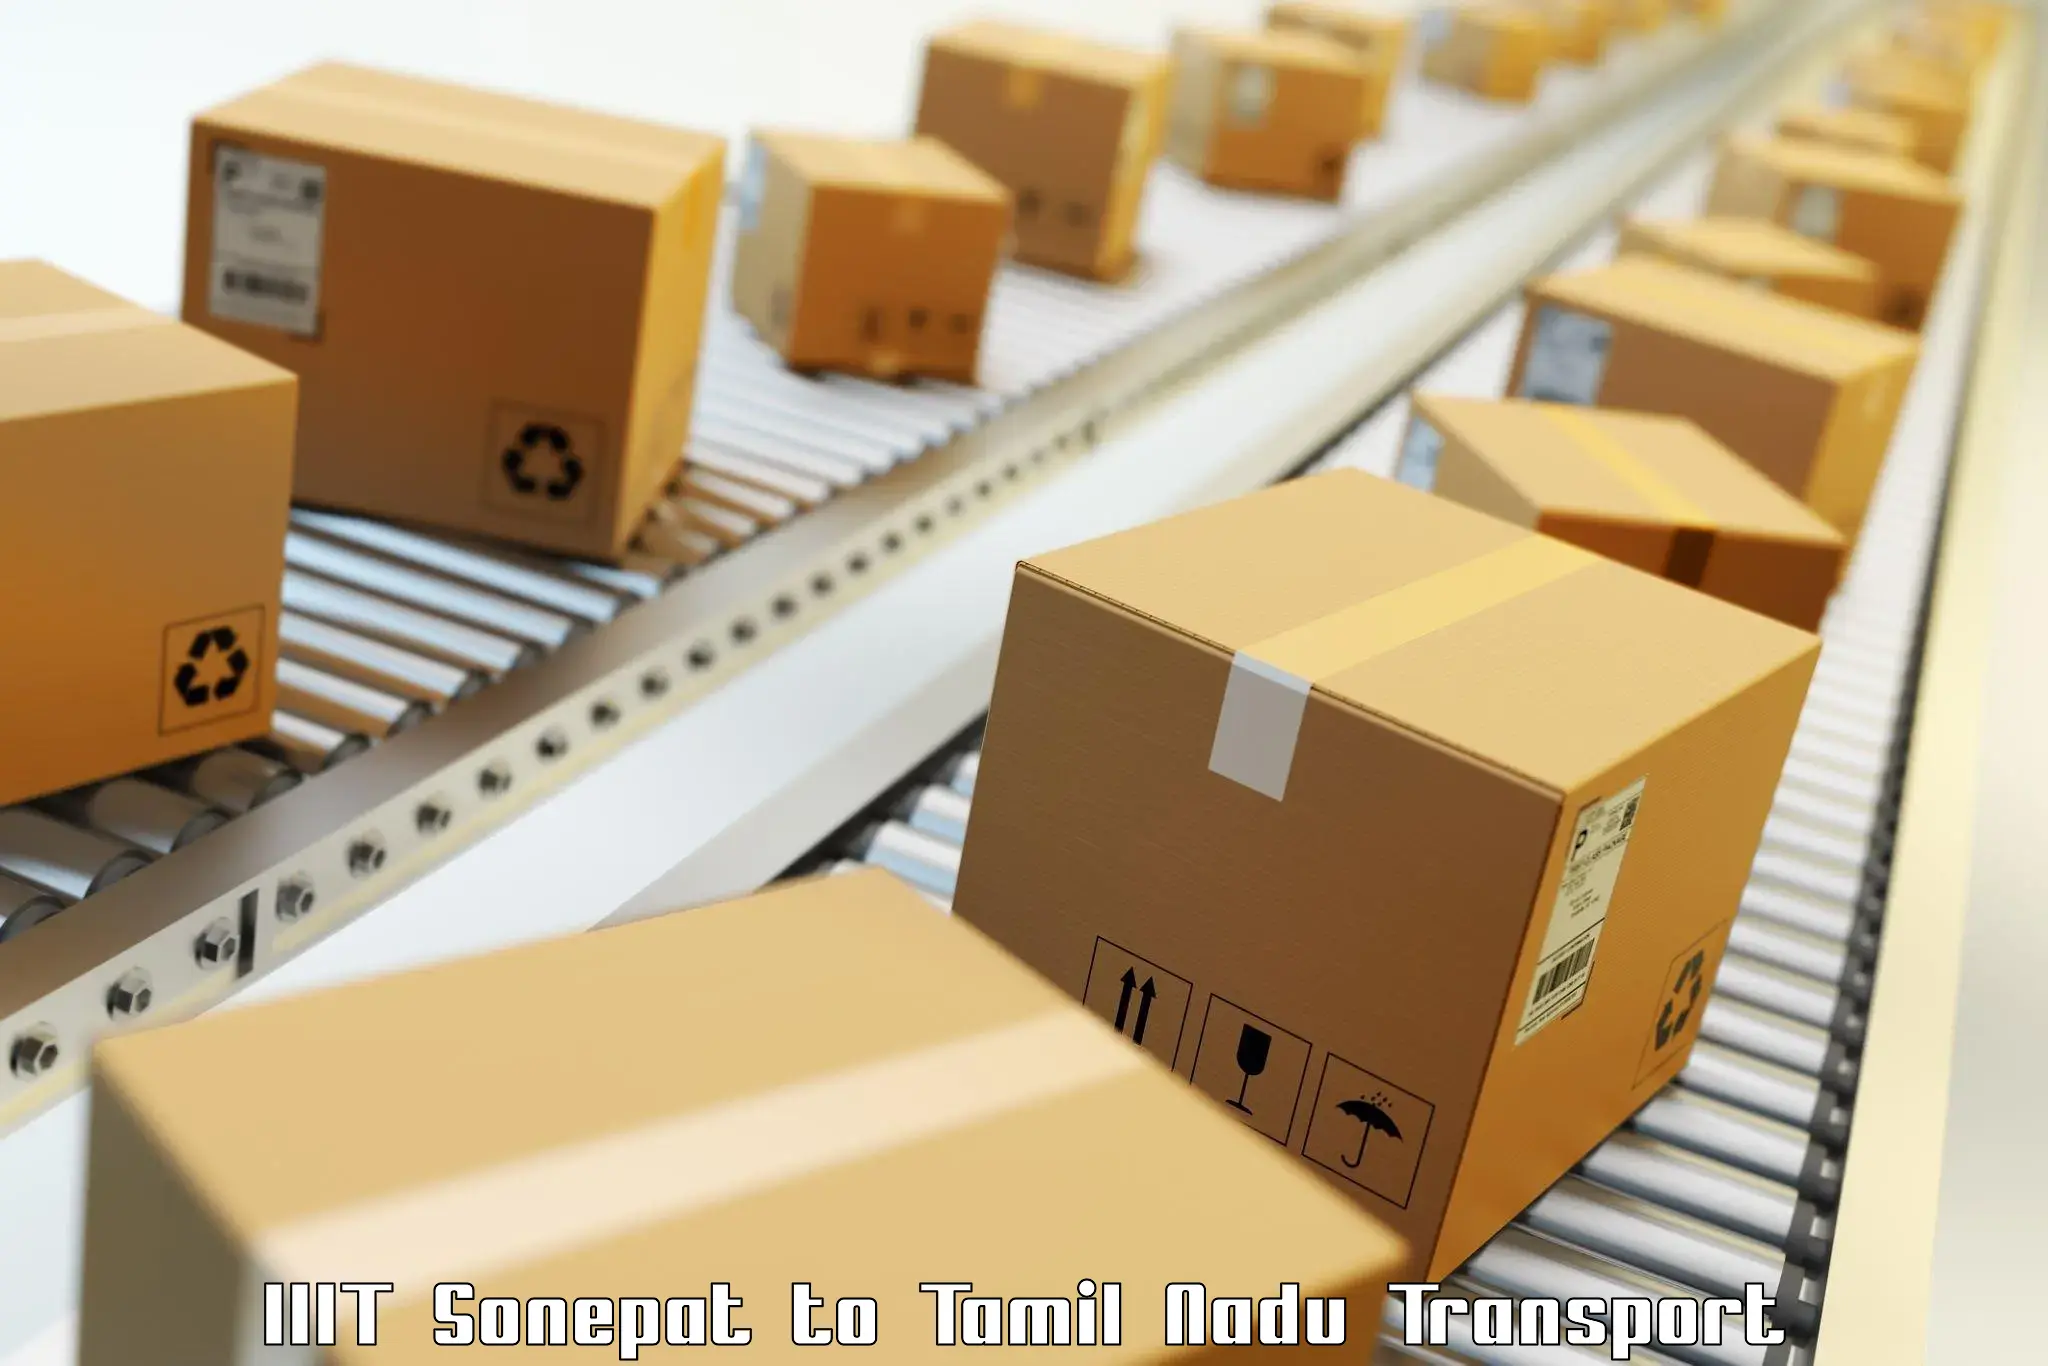 Container transport service IIIT Sonepat to Melmaruvathur